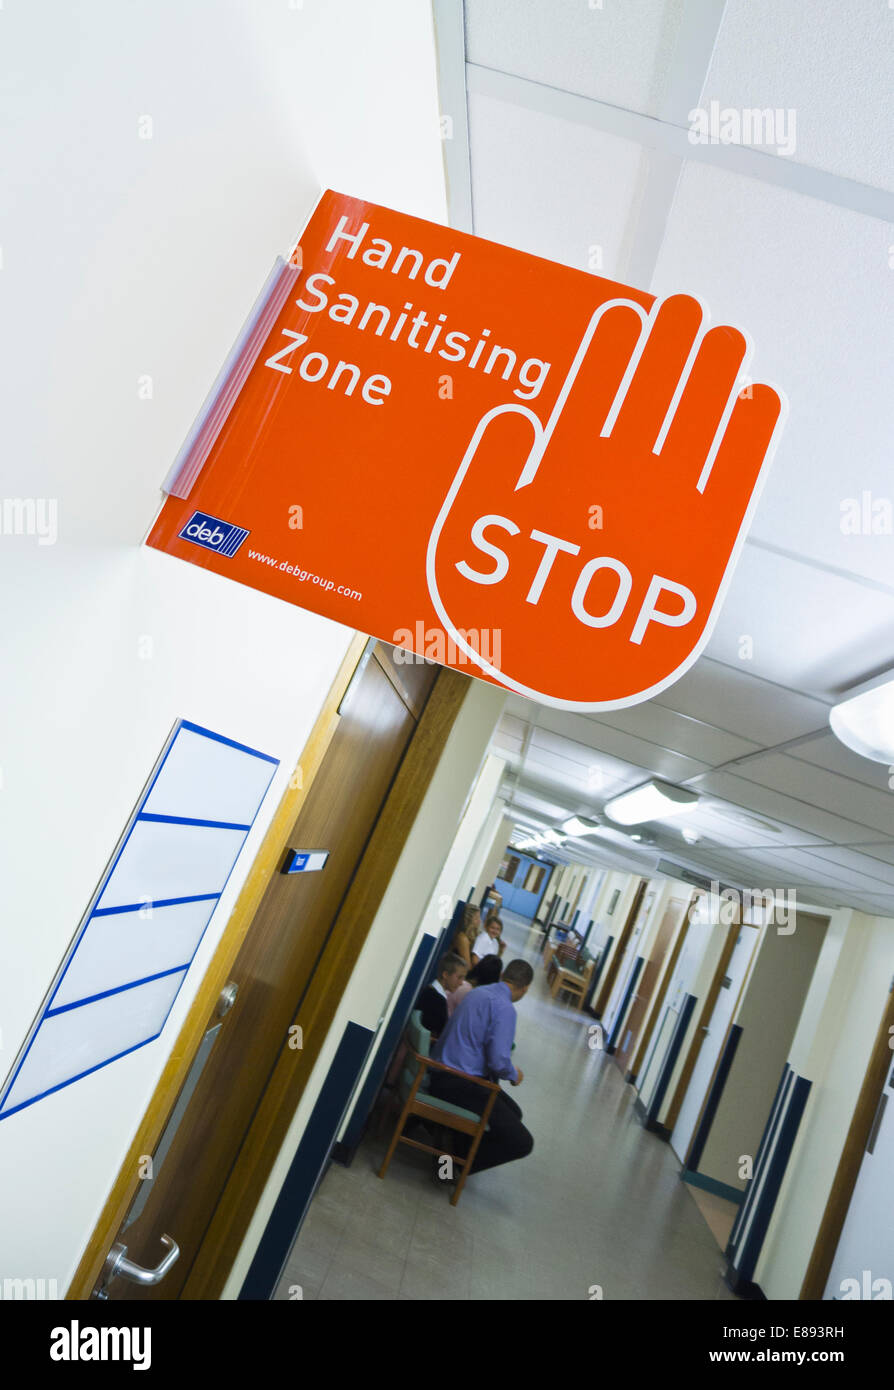 Hand Sanitizing Zone Warnzeichen in einem Krankenhaus. Stockfoto